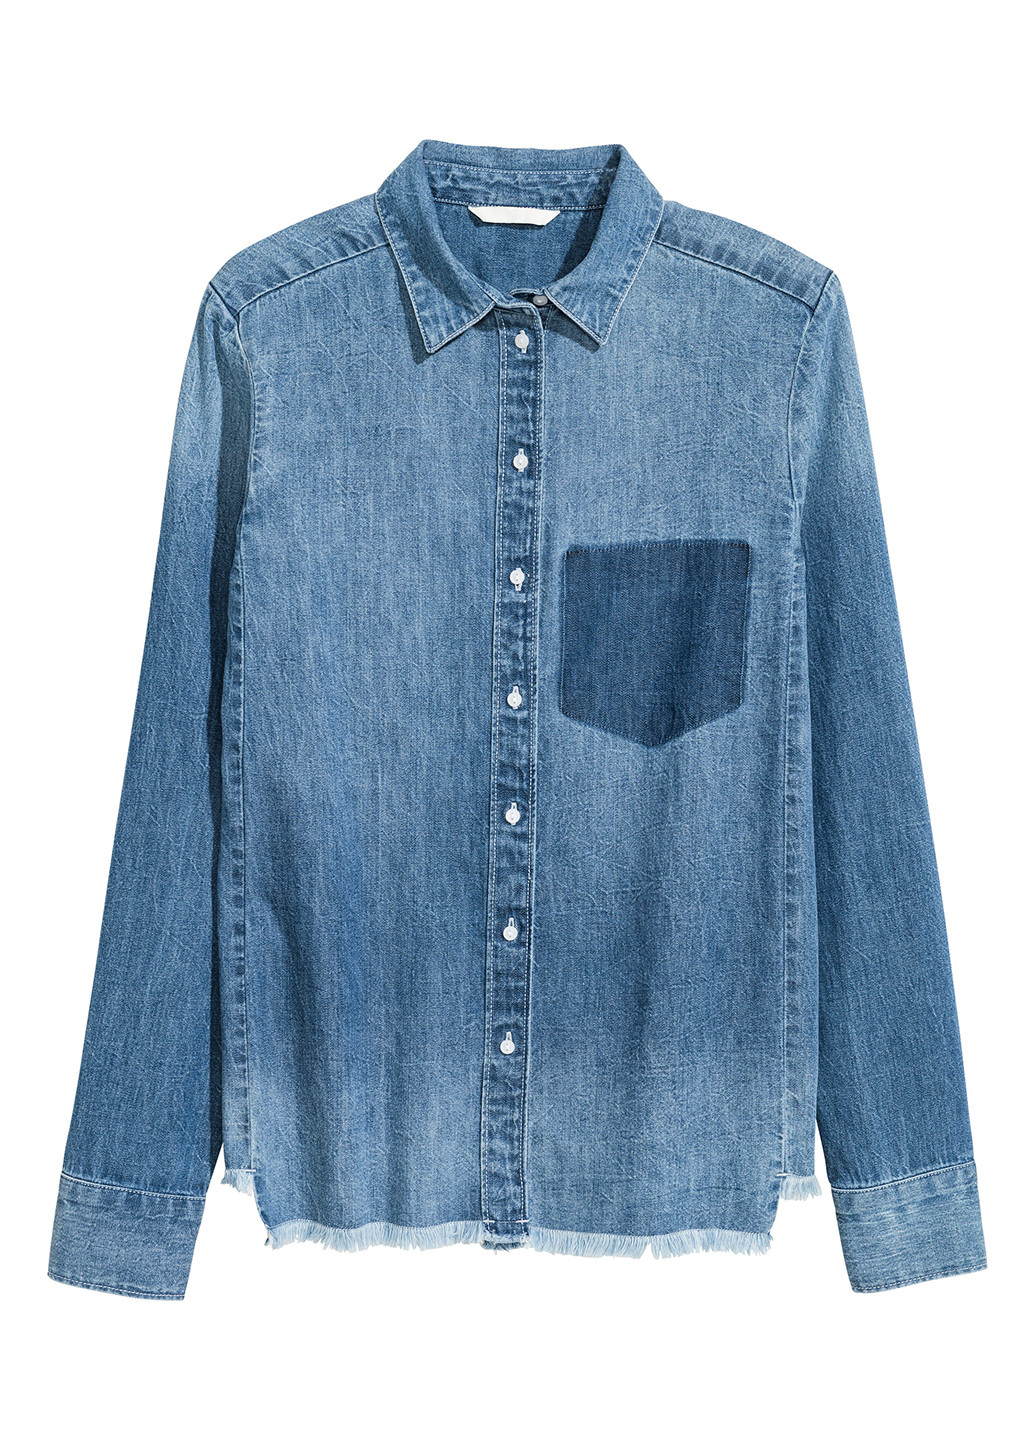 Синяя джинсовая рубашка меланж H&M